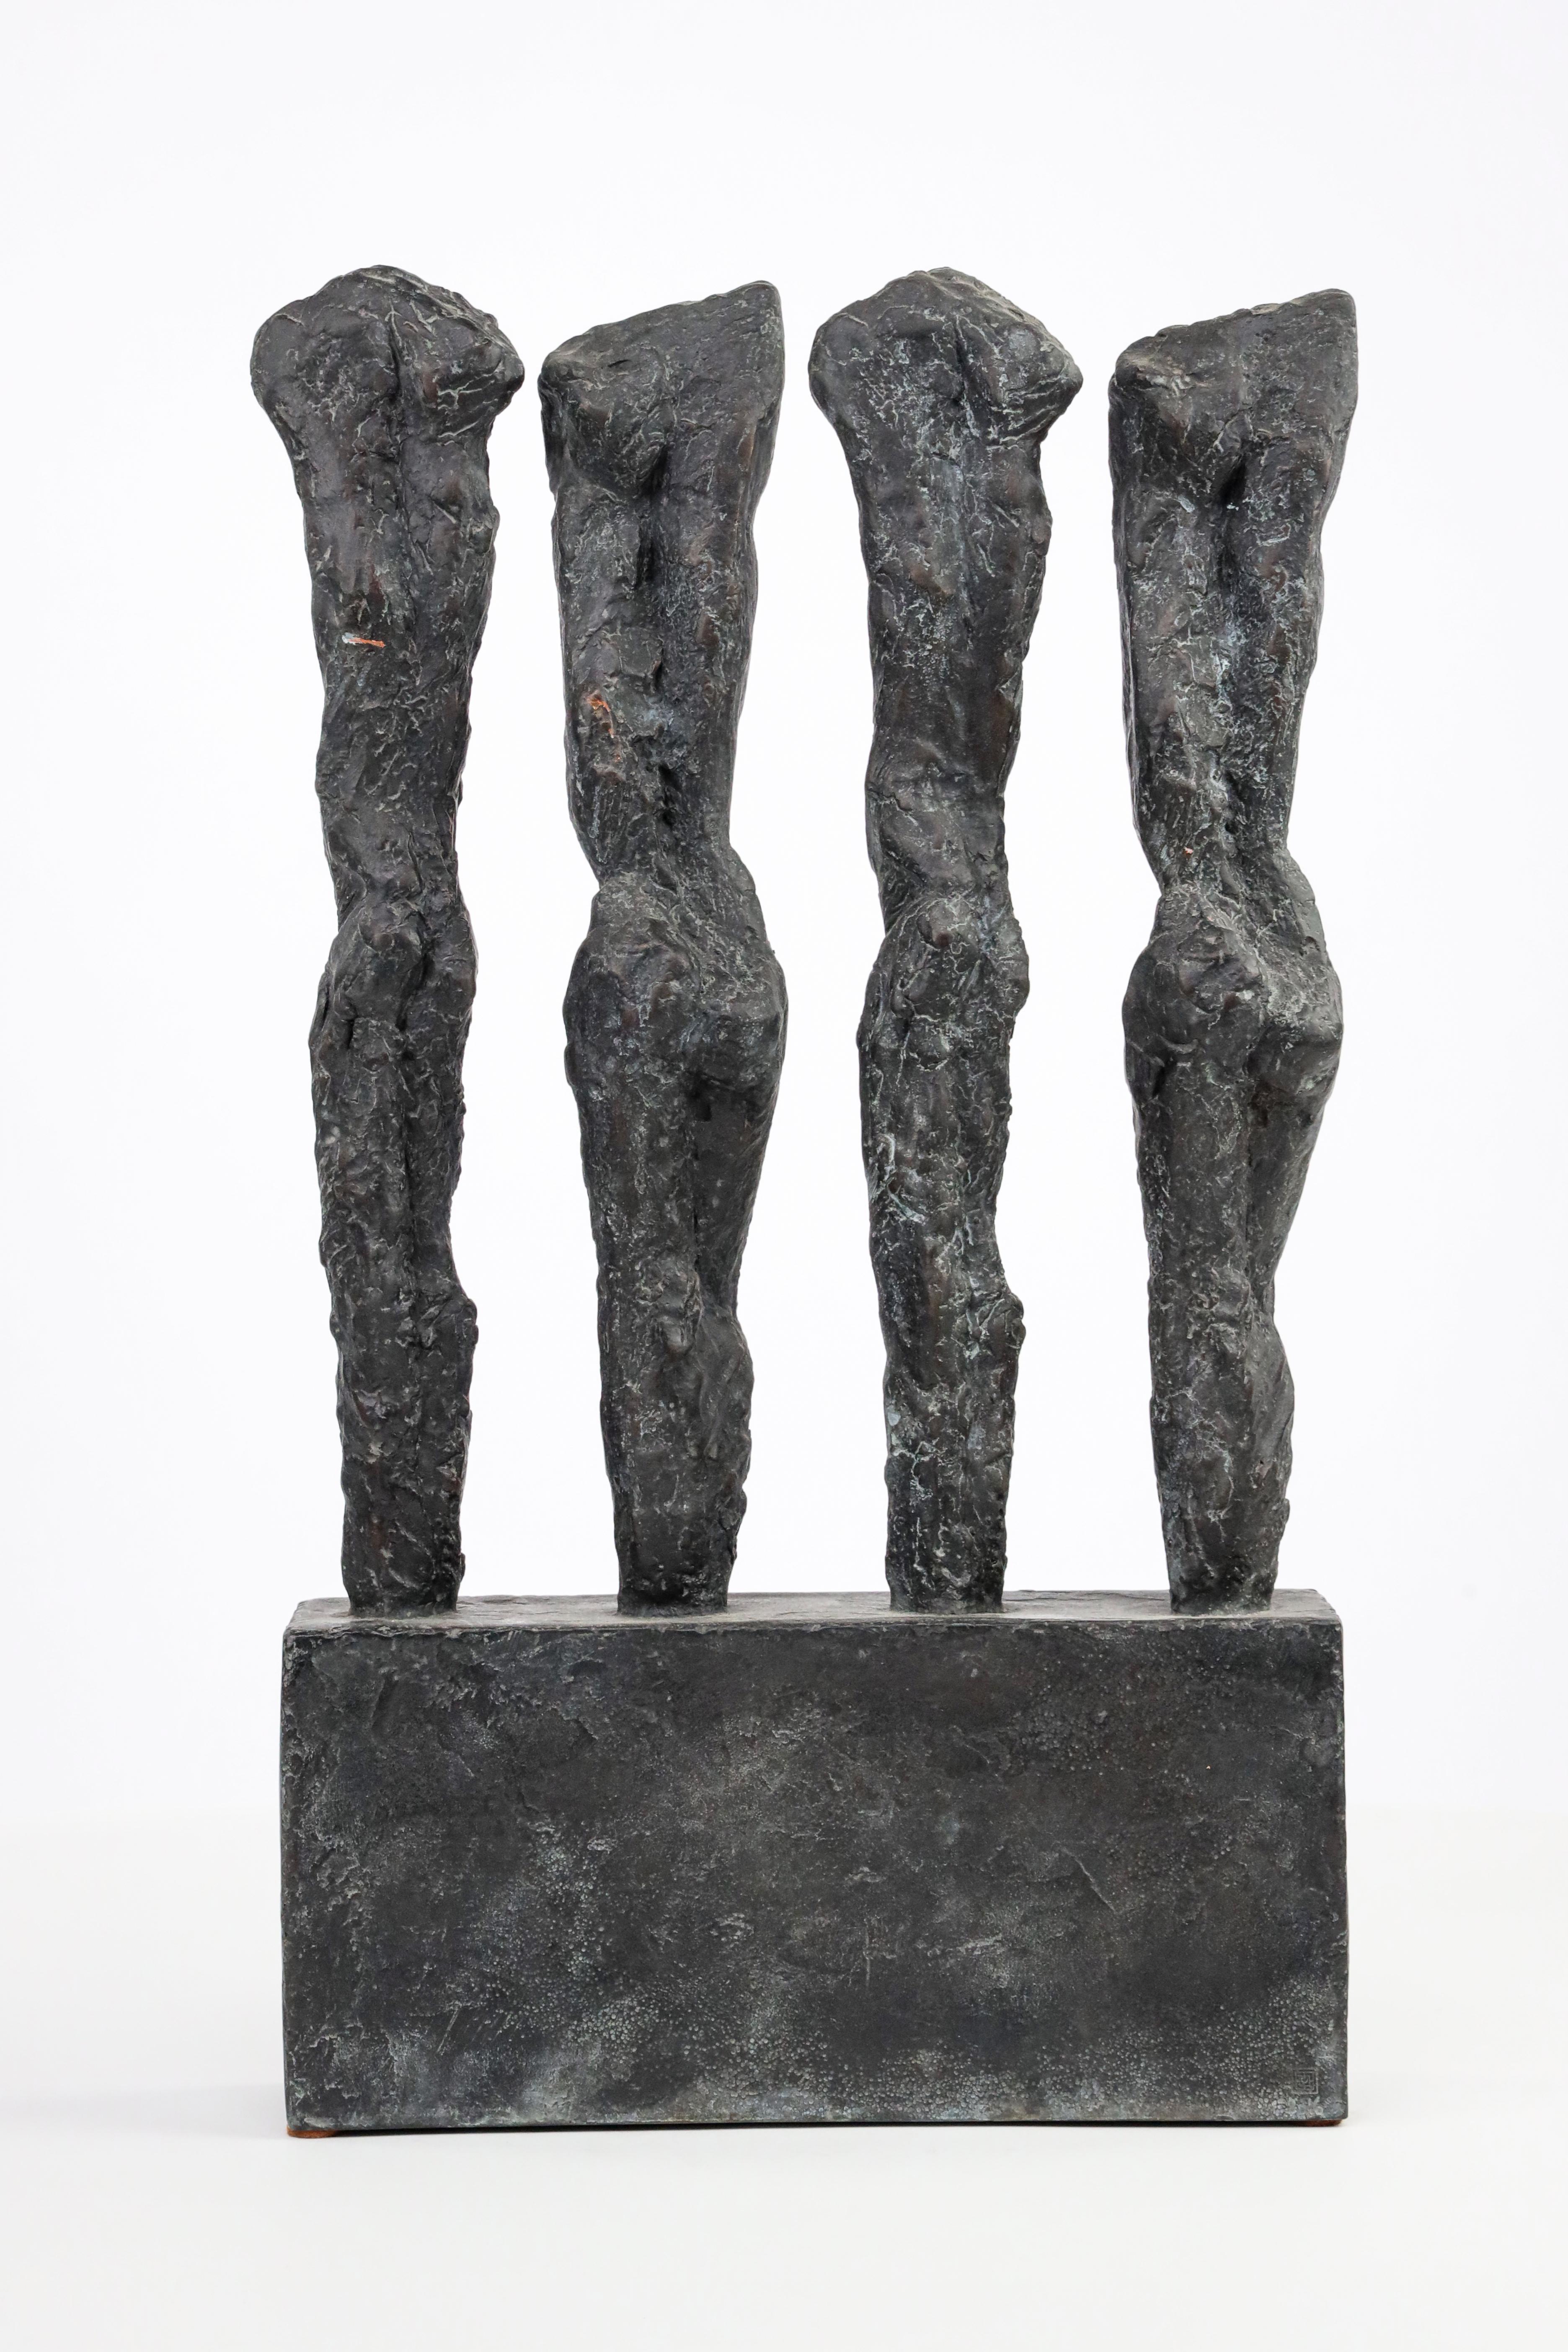 In Line von M. Demal - Bronzeskulptur, Gruppe von weiblichen Figuren, halb-abstrakte Skulptur (Zeitgenössisch), Sculpture, von Martine Demal